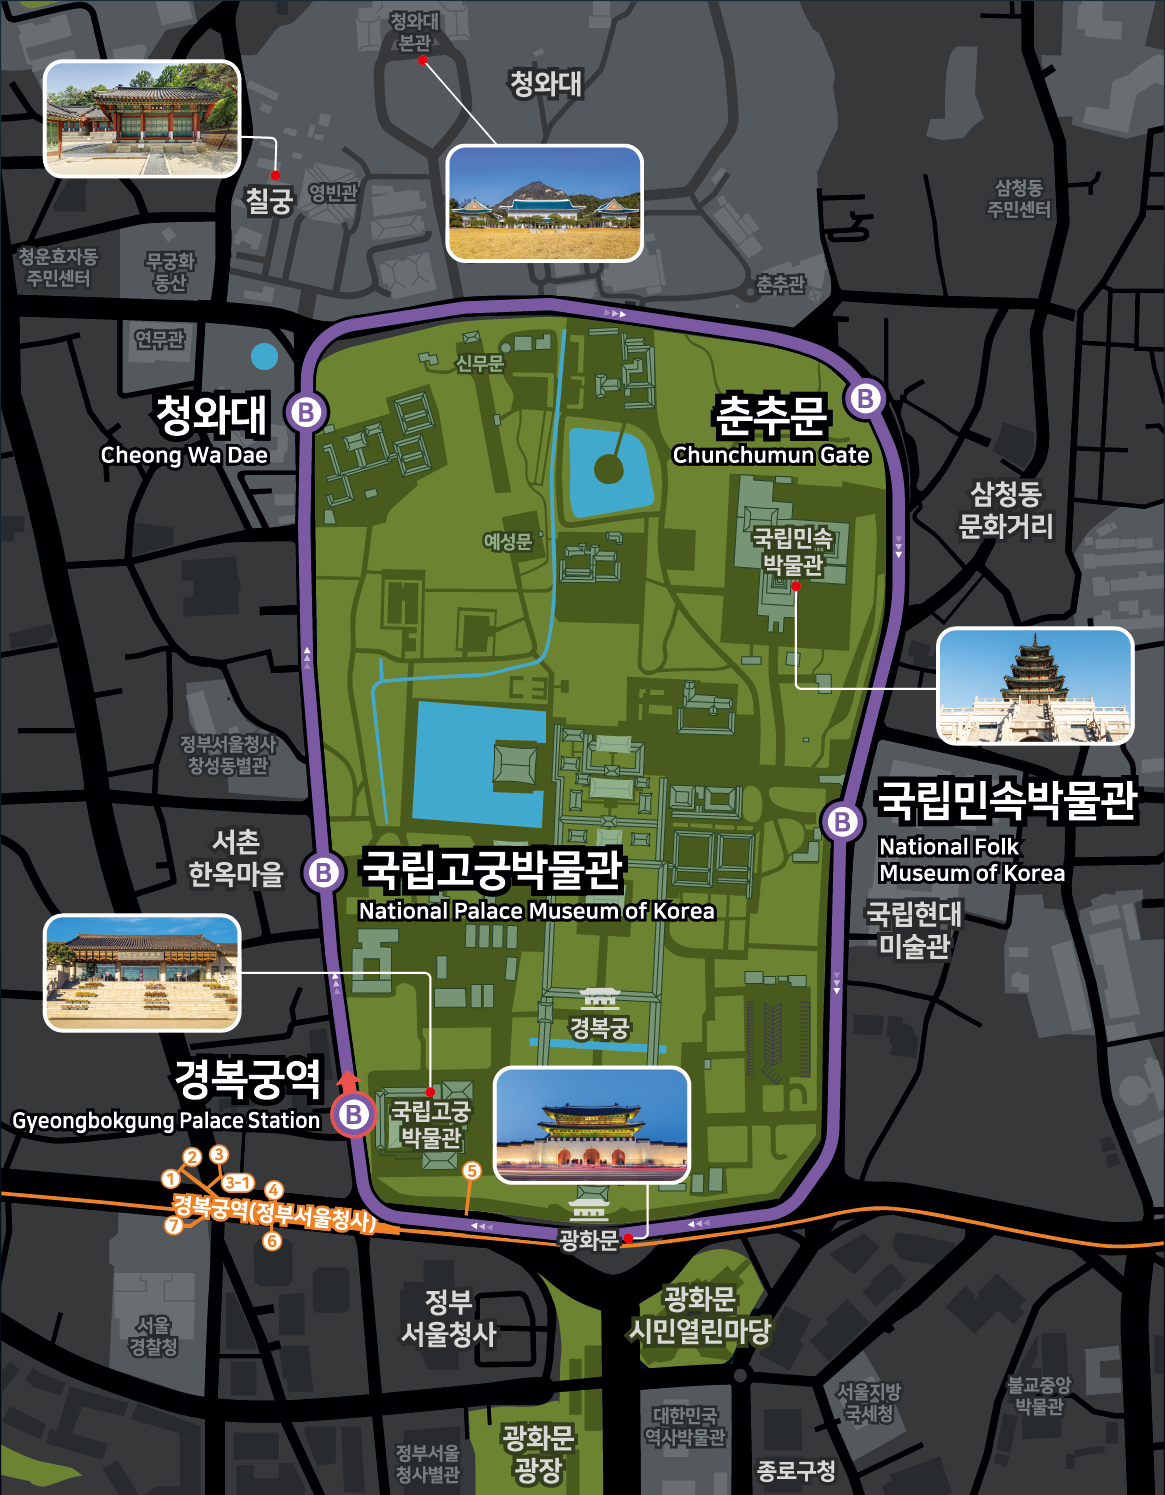 서울시 자율 주행버스 안내도입니다. 이용 방법 등 자세한 내용은 아래의 내용을 참조해주세요. 안내도 상에 표시된 장소는 다음과 같습니다.